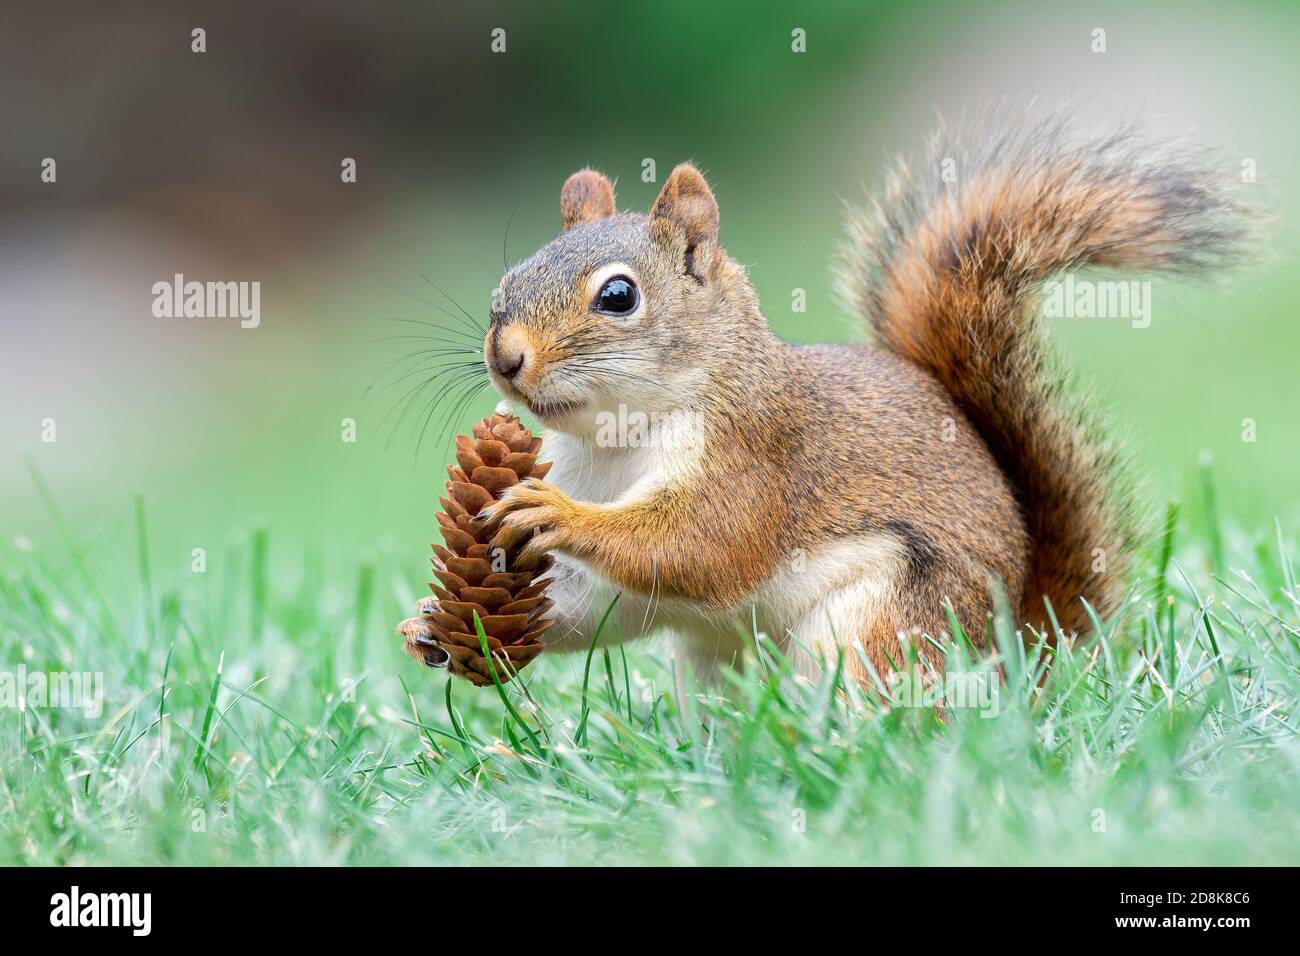 American Red Squirrel (Scurius hudsonicus) Esskegel von Nadelbaum, Upper Midwest, USA, von Dominique Braud/Dembinsky Photo Assoc Stockfoto